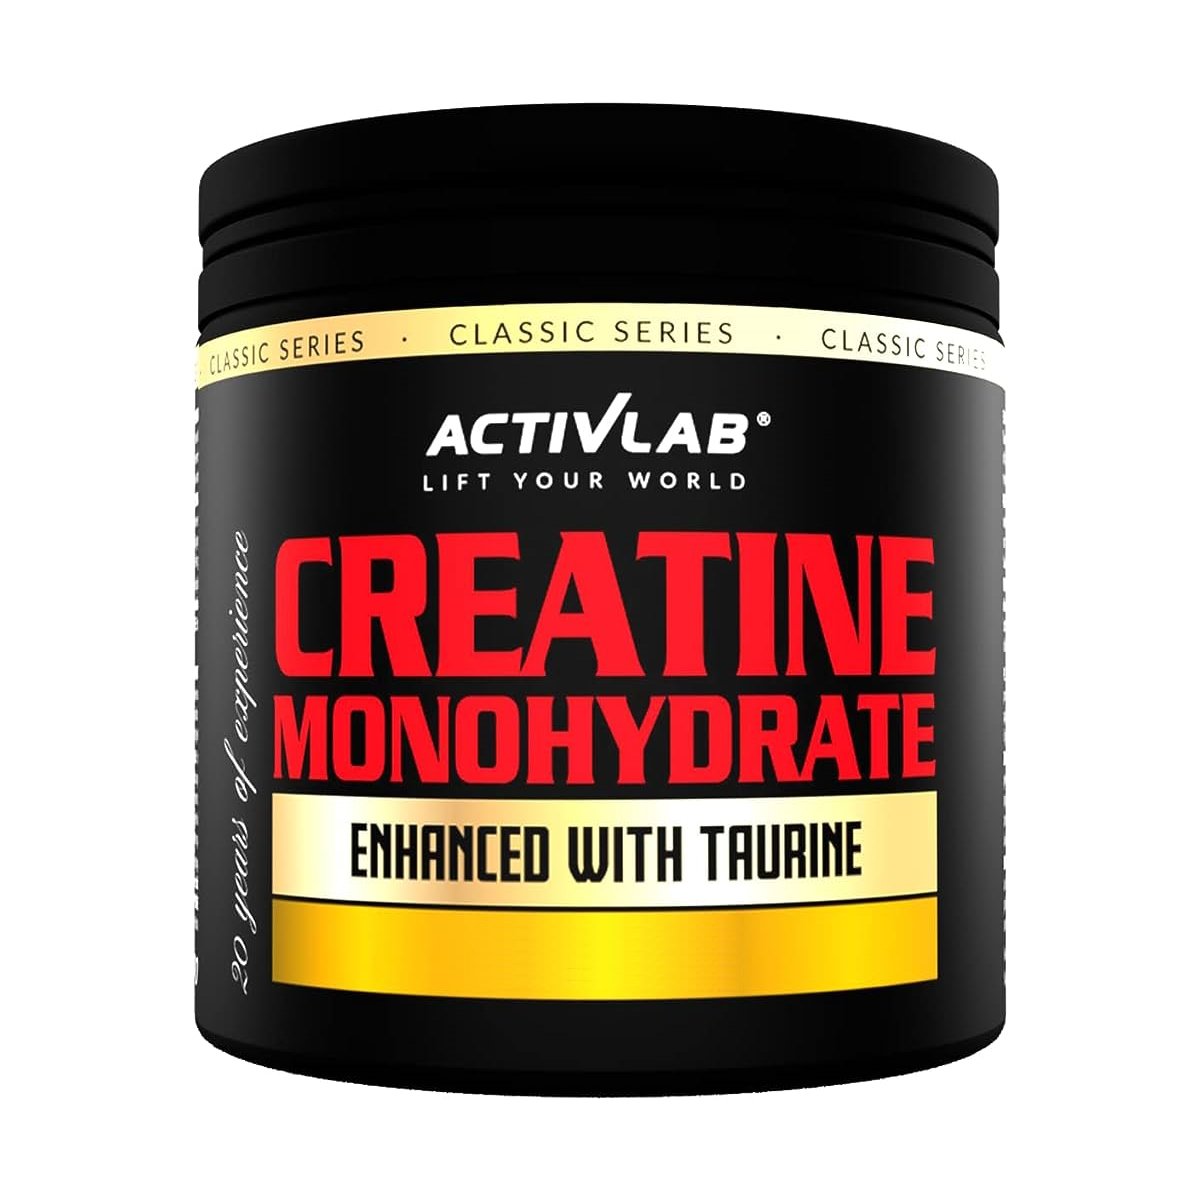 Креатин Activlab Classic Series Creatine Monohydrate with Taurine, 300 грамм Лимон,  мл, ActivLab. Креатин. Набор массы Энергия и выносливость Увеличение силы 